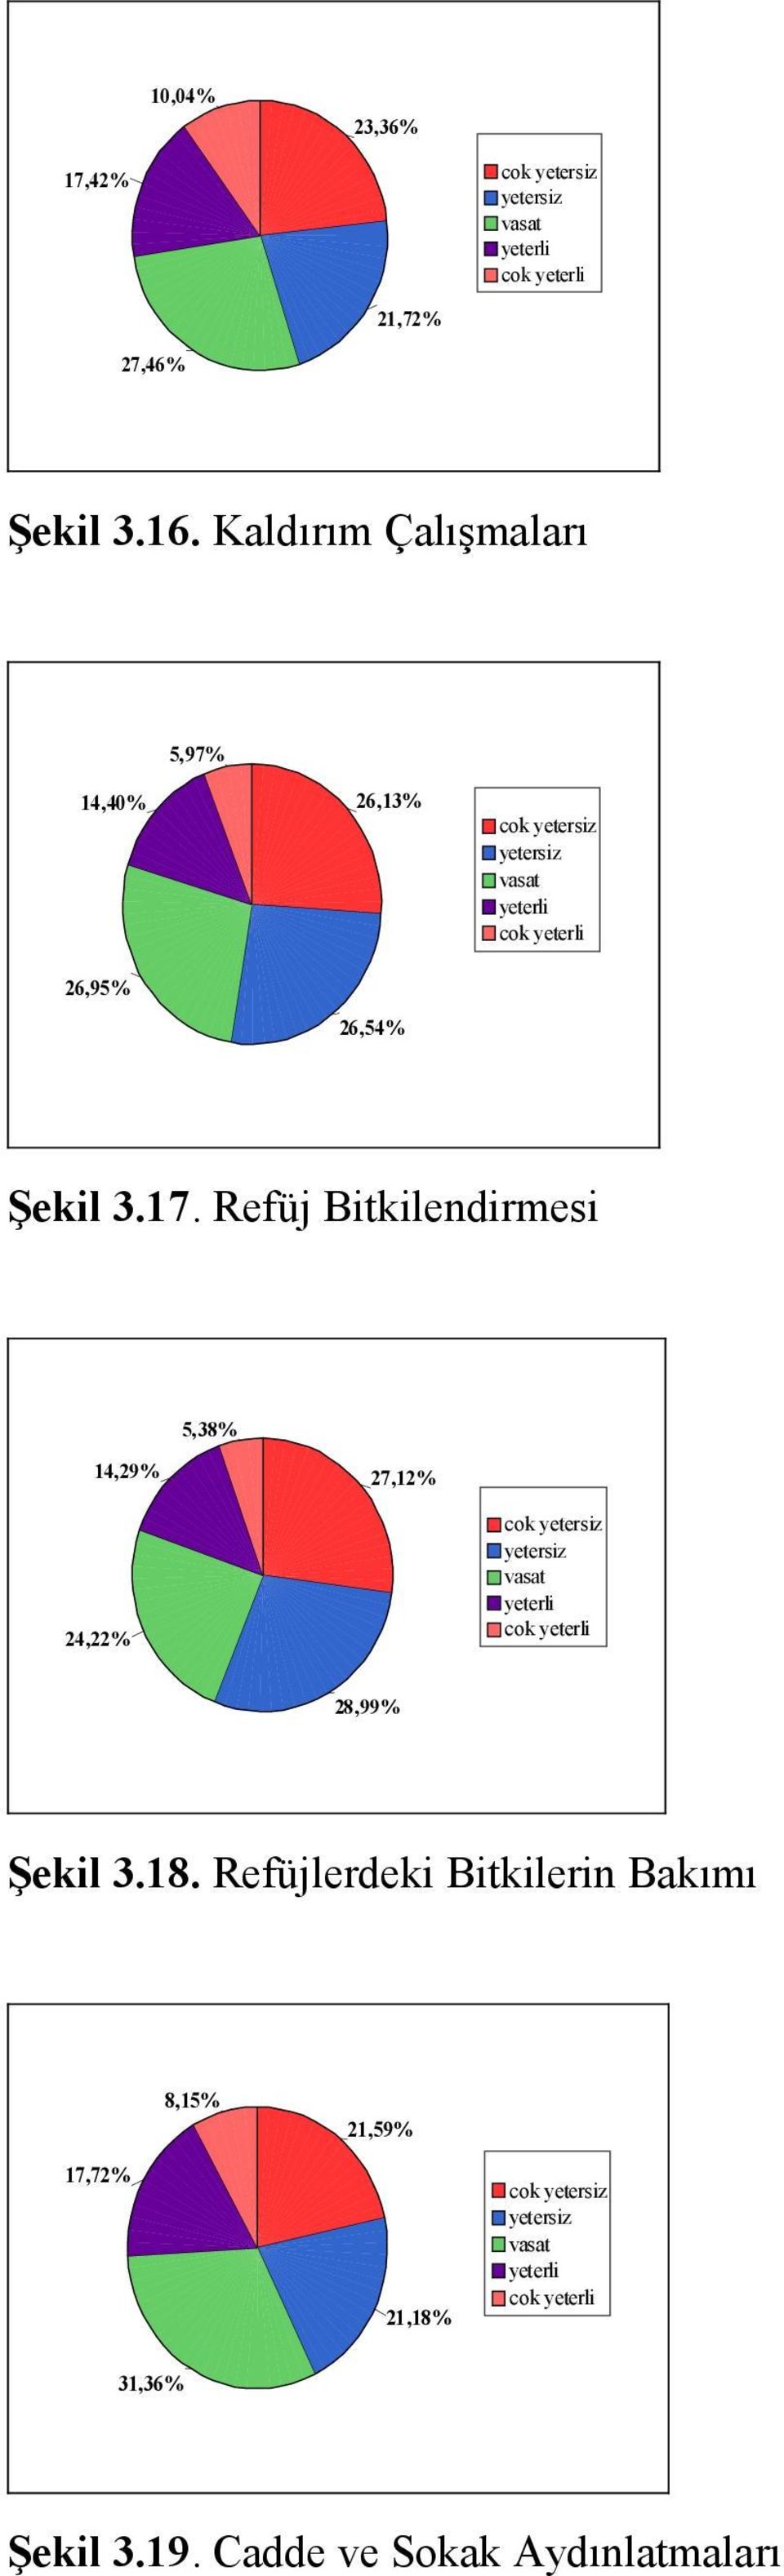 Refüj Bitkilendirmesi 5,38% 14,29% 27,12% 24,22% cok cok 28,99% Şekil 3.18.